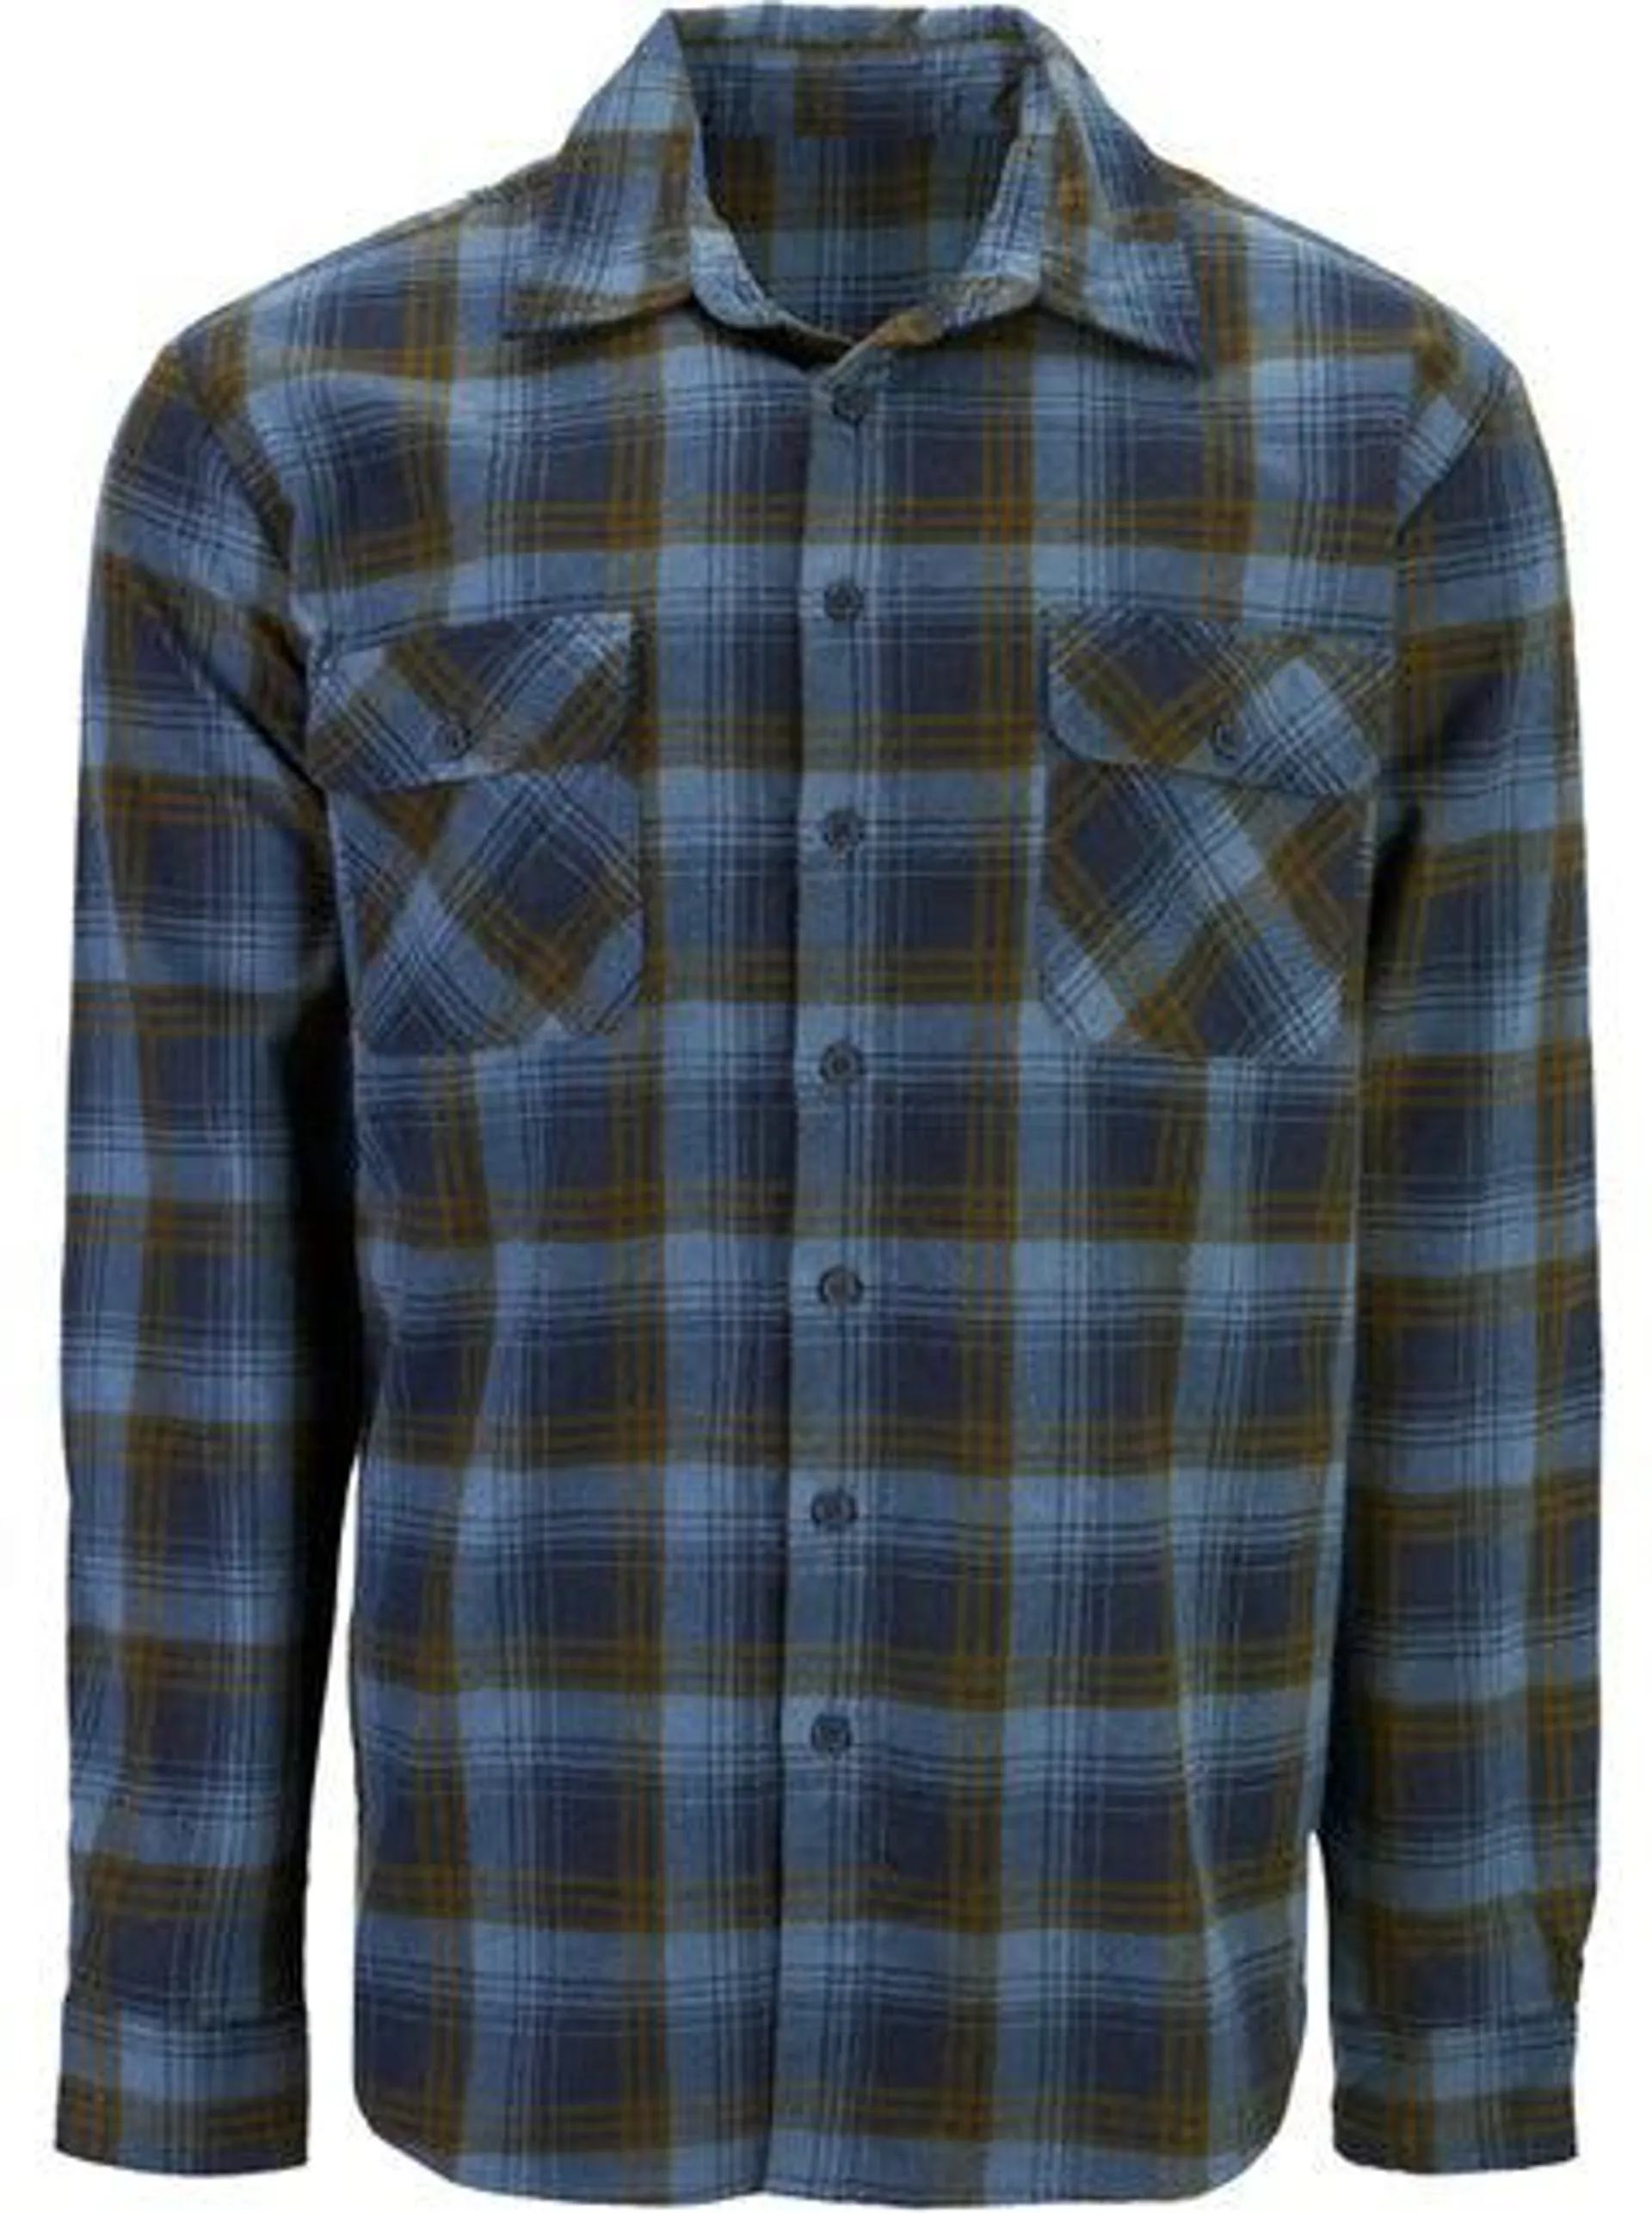 Men's Flannel Shirt in Navy/khaki/light Blue